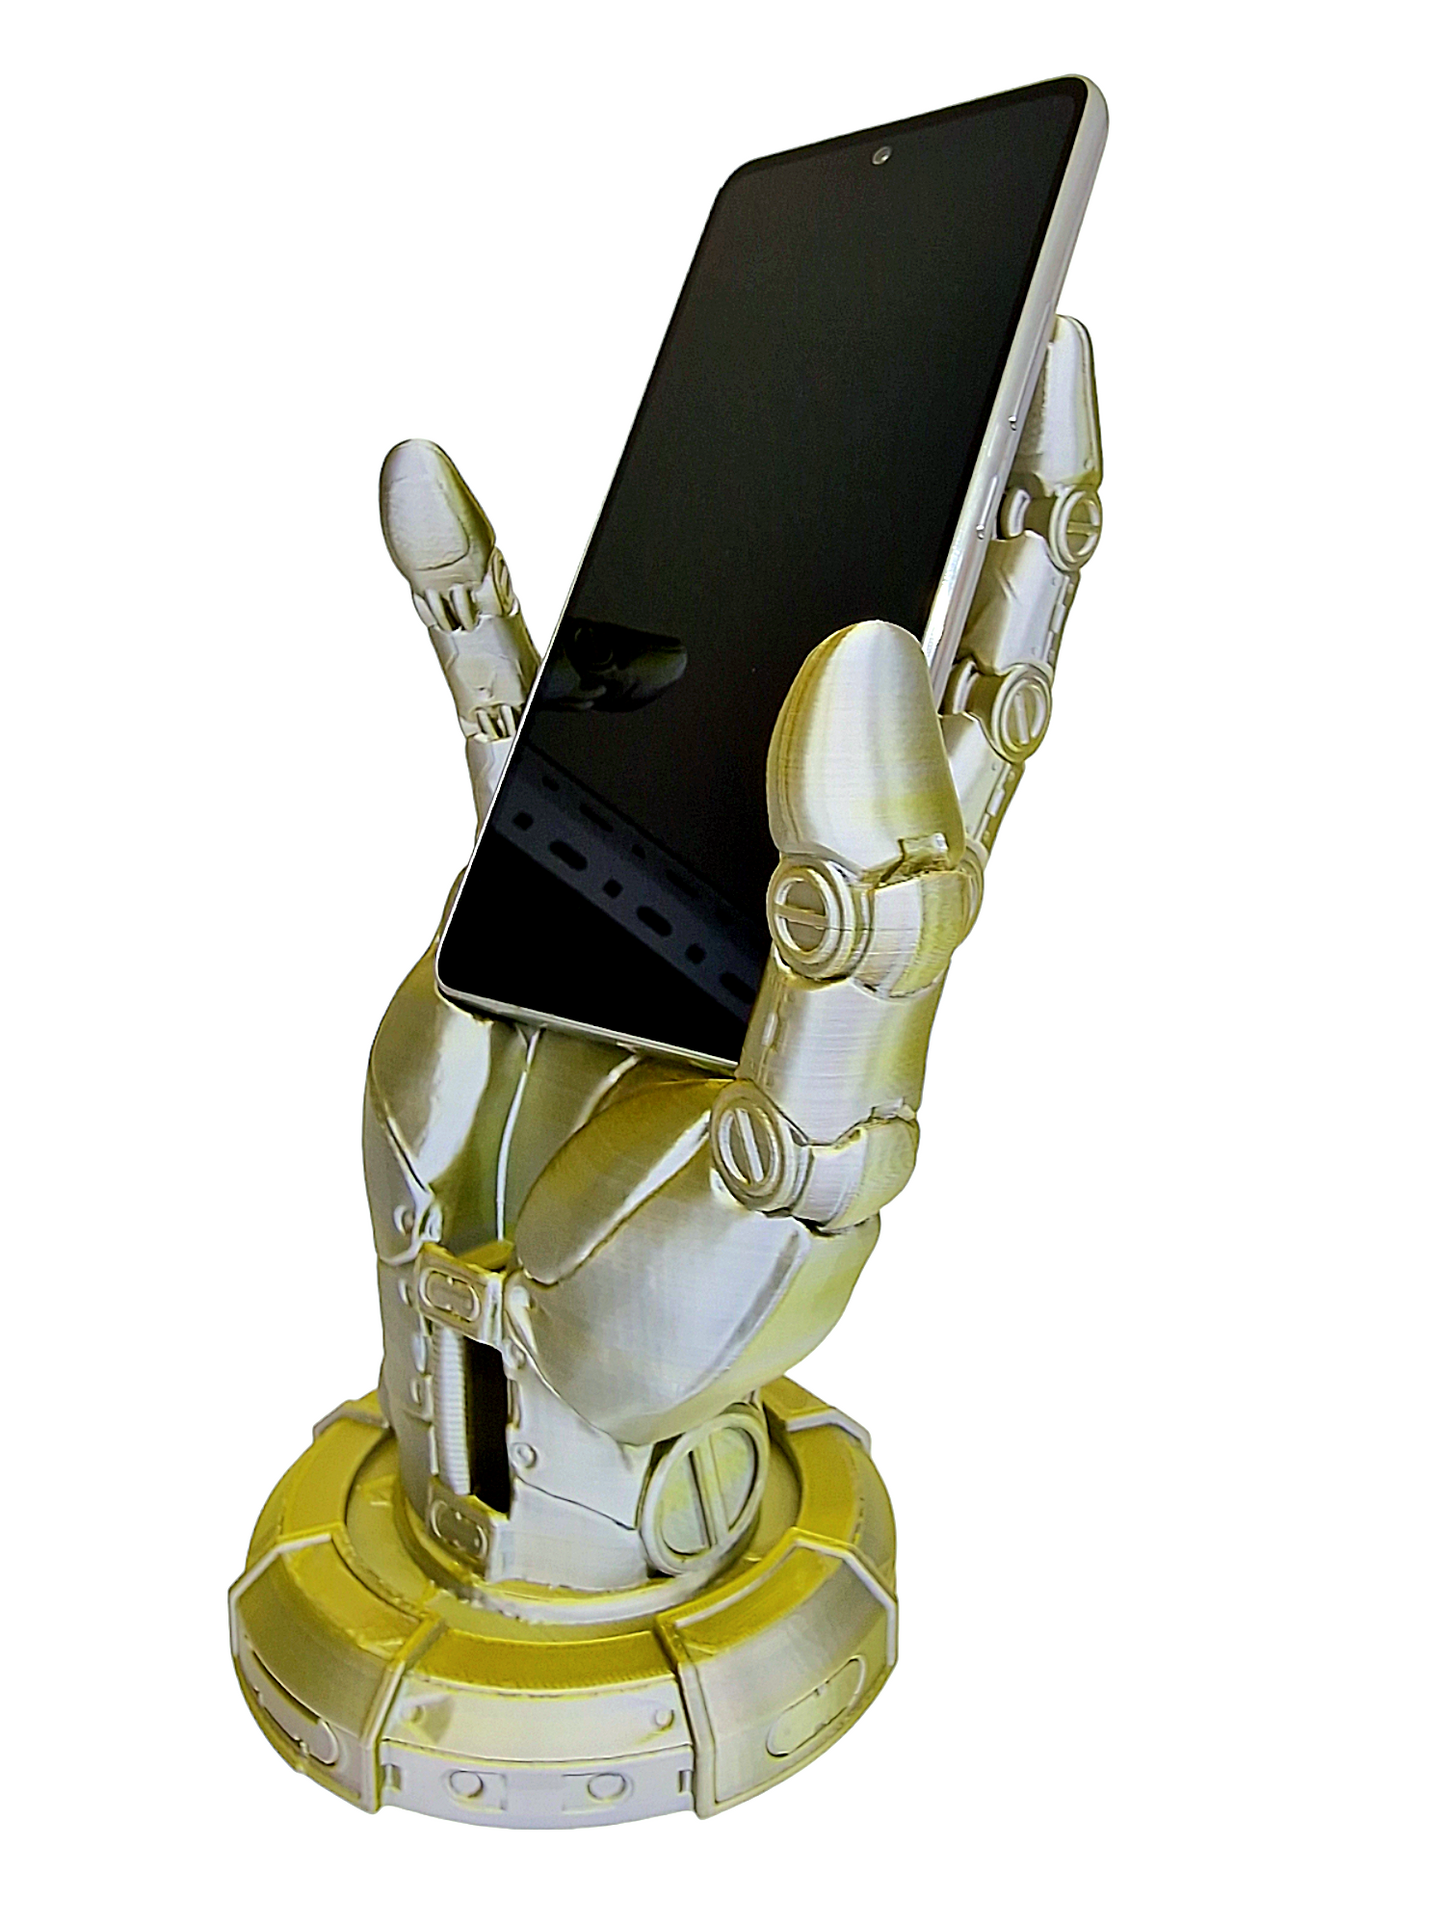 AndroidStand - Moderní stojánek ve stylu androidí ruky pro fanoušky sci-fi